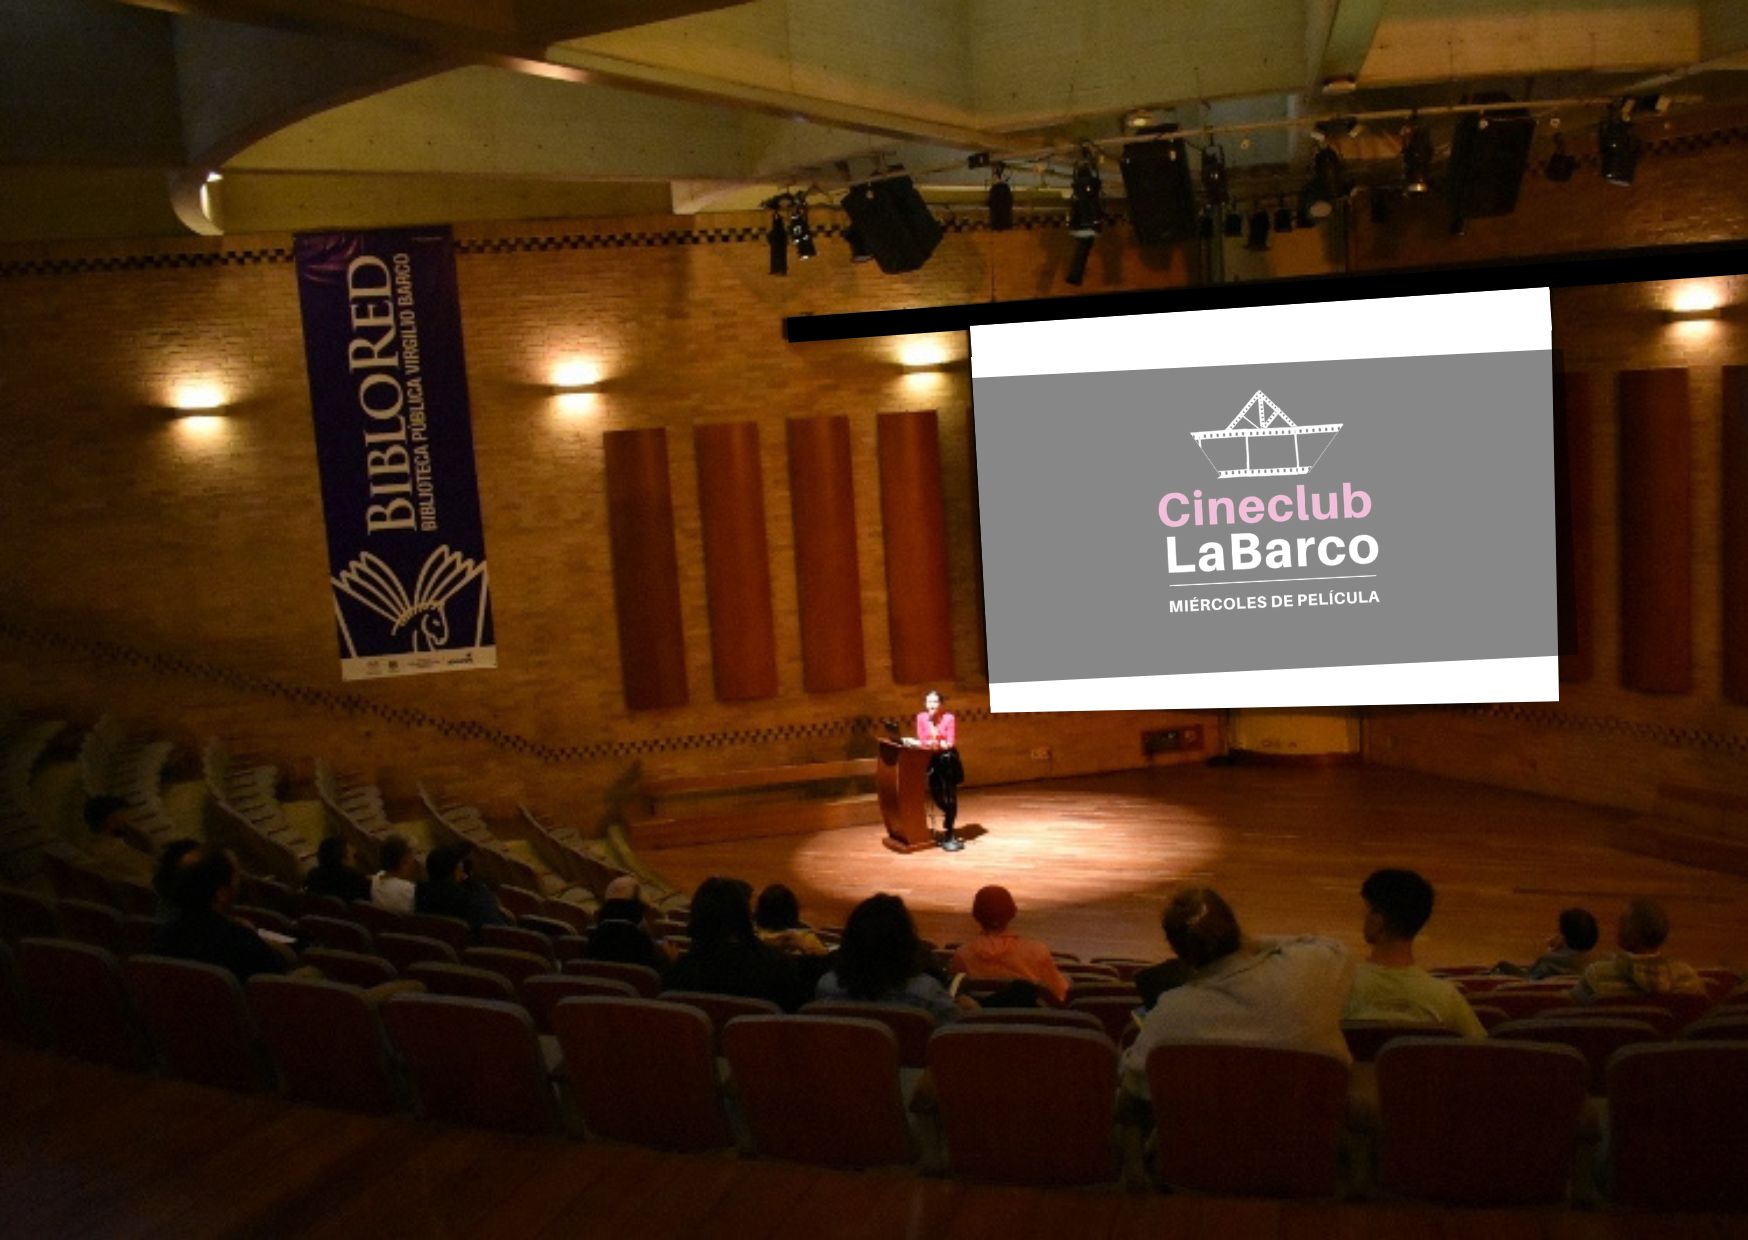 Acompáñanos, participa y sé parte de una fresca y renovada programación en el Cineclub LaBarco